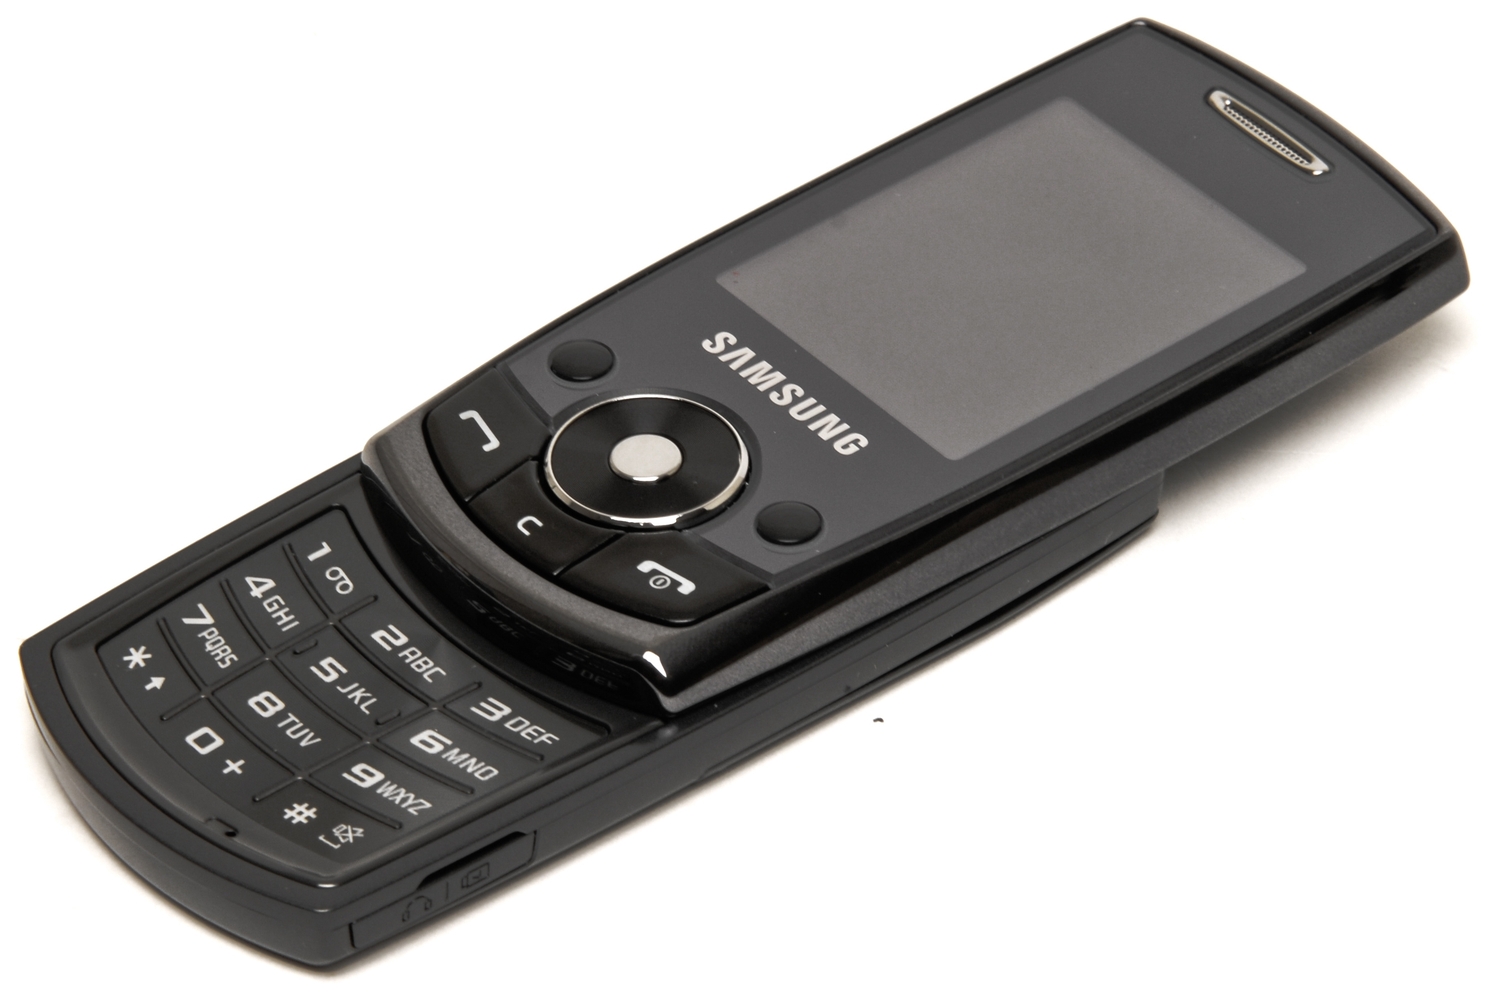 Samsung, Samsung Phone, J700, Samsung J700